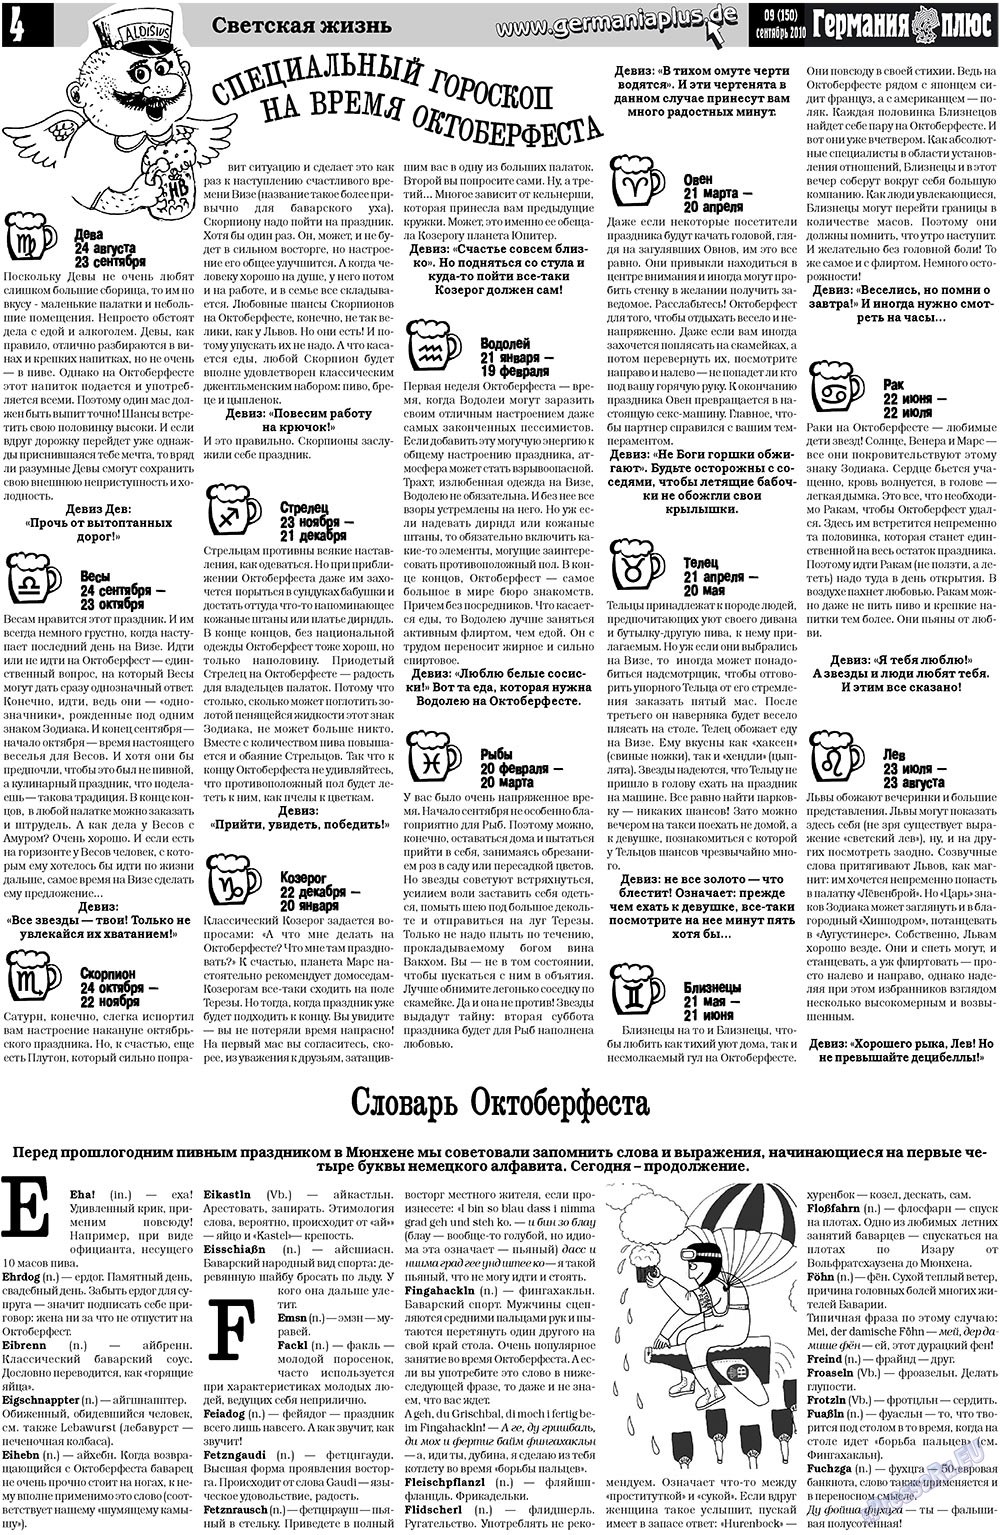 Германия плюс, газета. 2010 №9 стр.4